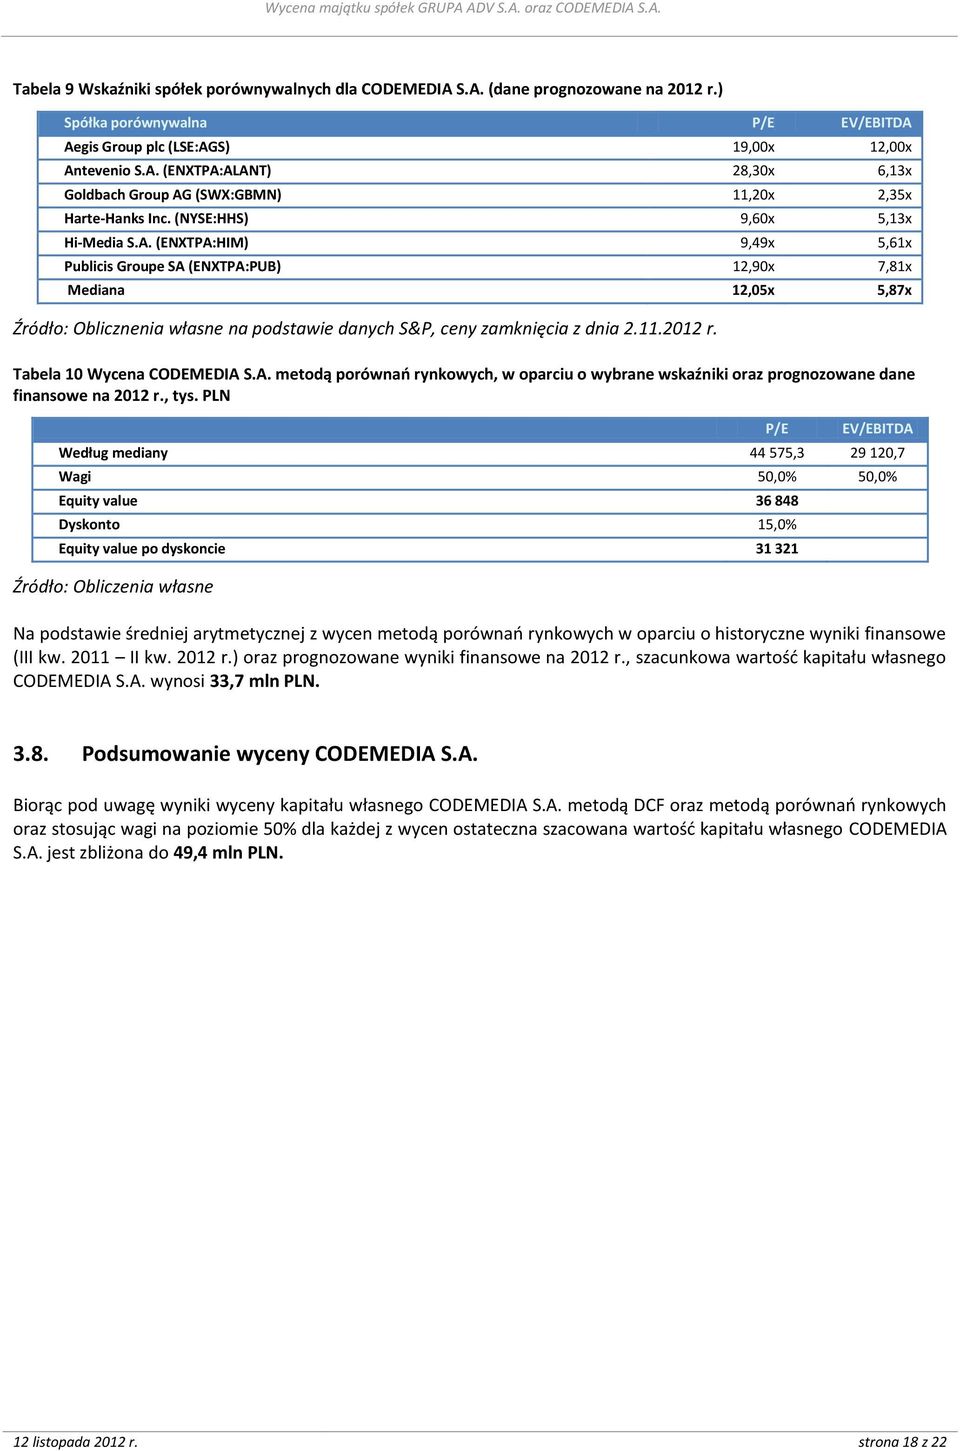 (ENXTPA:HIM) 9,49x 5,61x Publicis Groupe SA (ENXTPA:PUB) 12,90x 7,81x Mediana 12,05x 5,87x Źródło: Oblicznenia własne na podstawie danych S&P, ceny zamknięcia z dnia 2.11.2012 r.